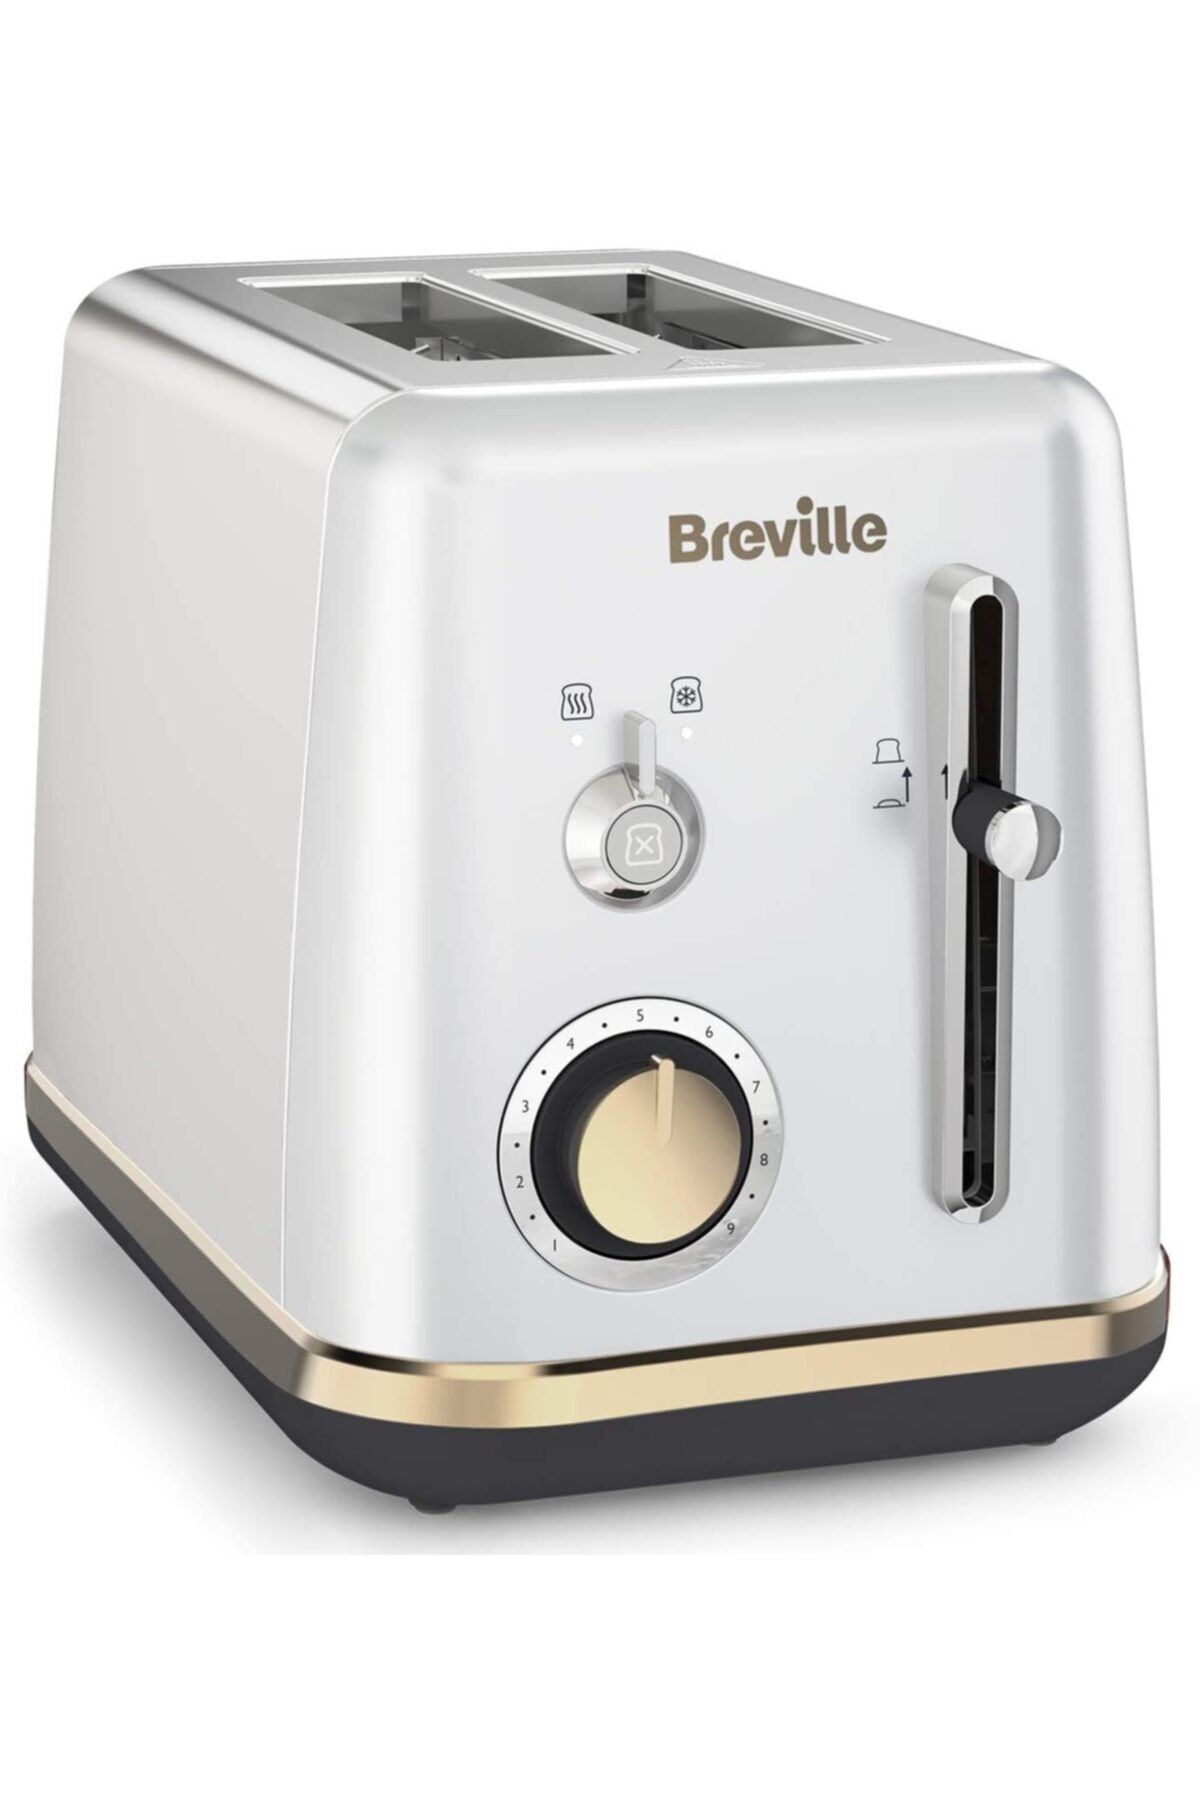 Breville Brevılle Ekmek Kızartma Makinesi